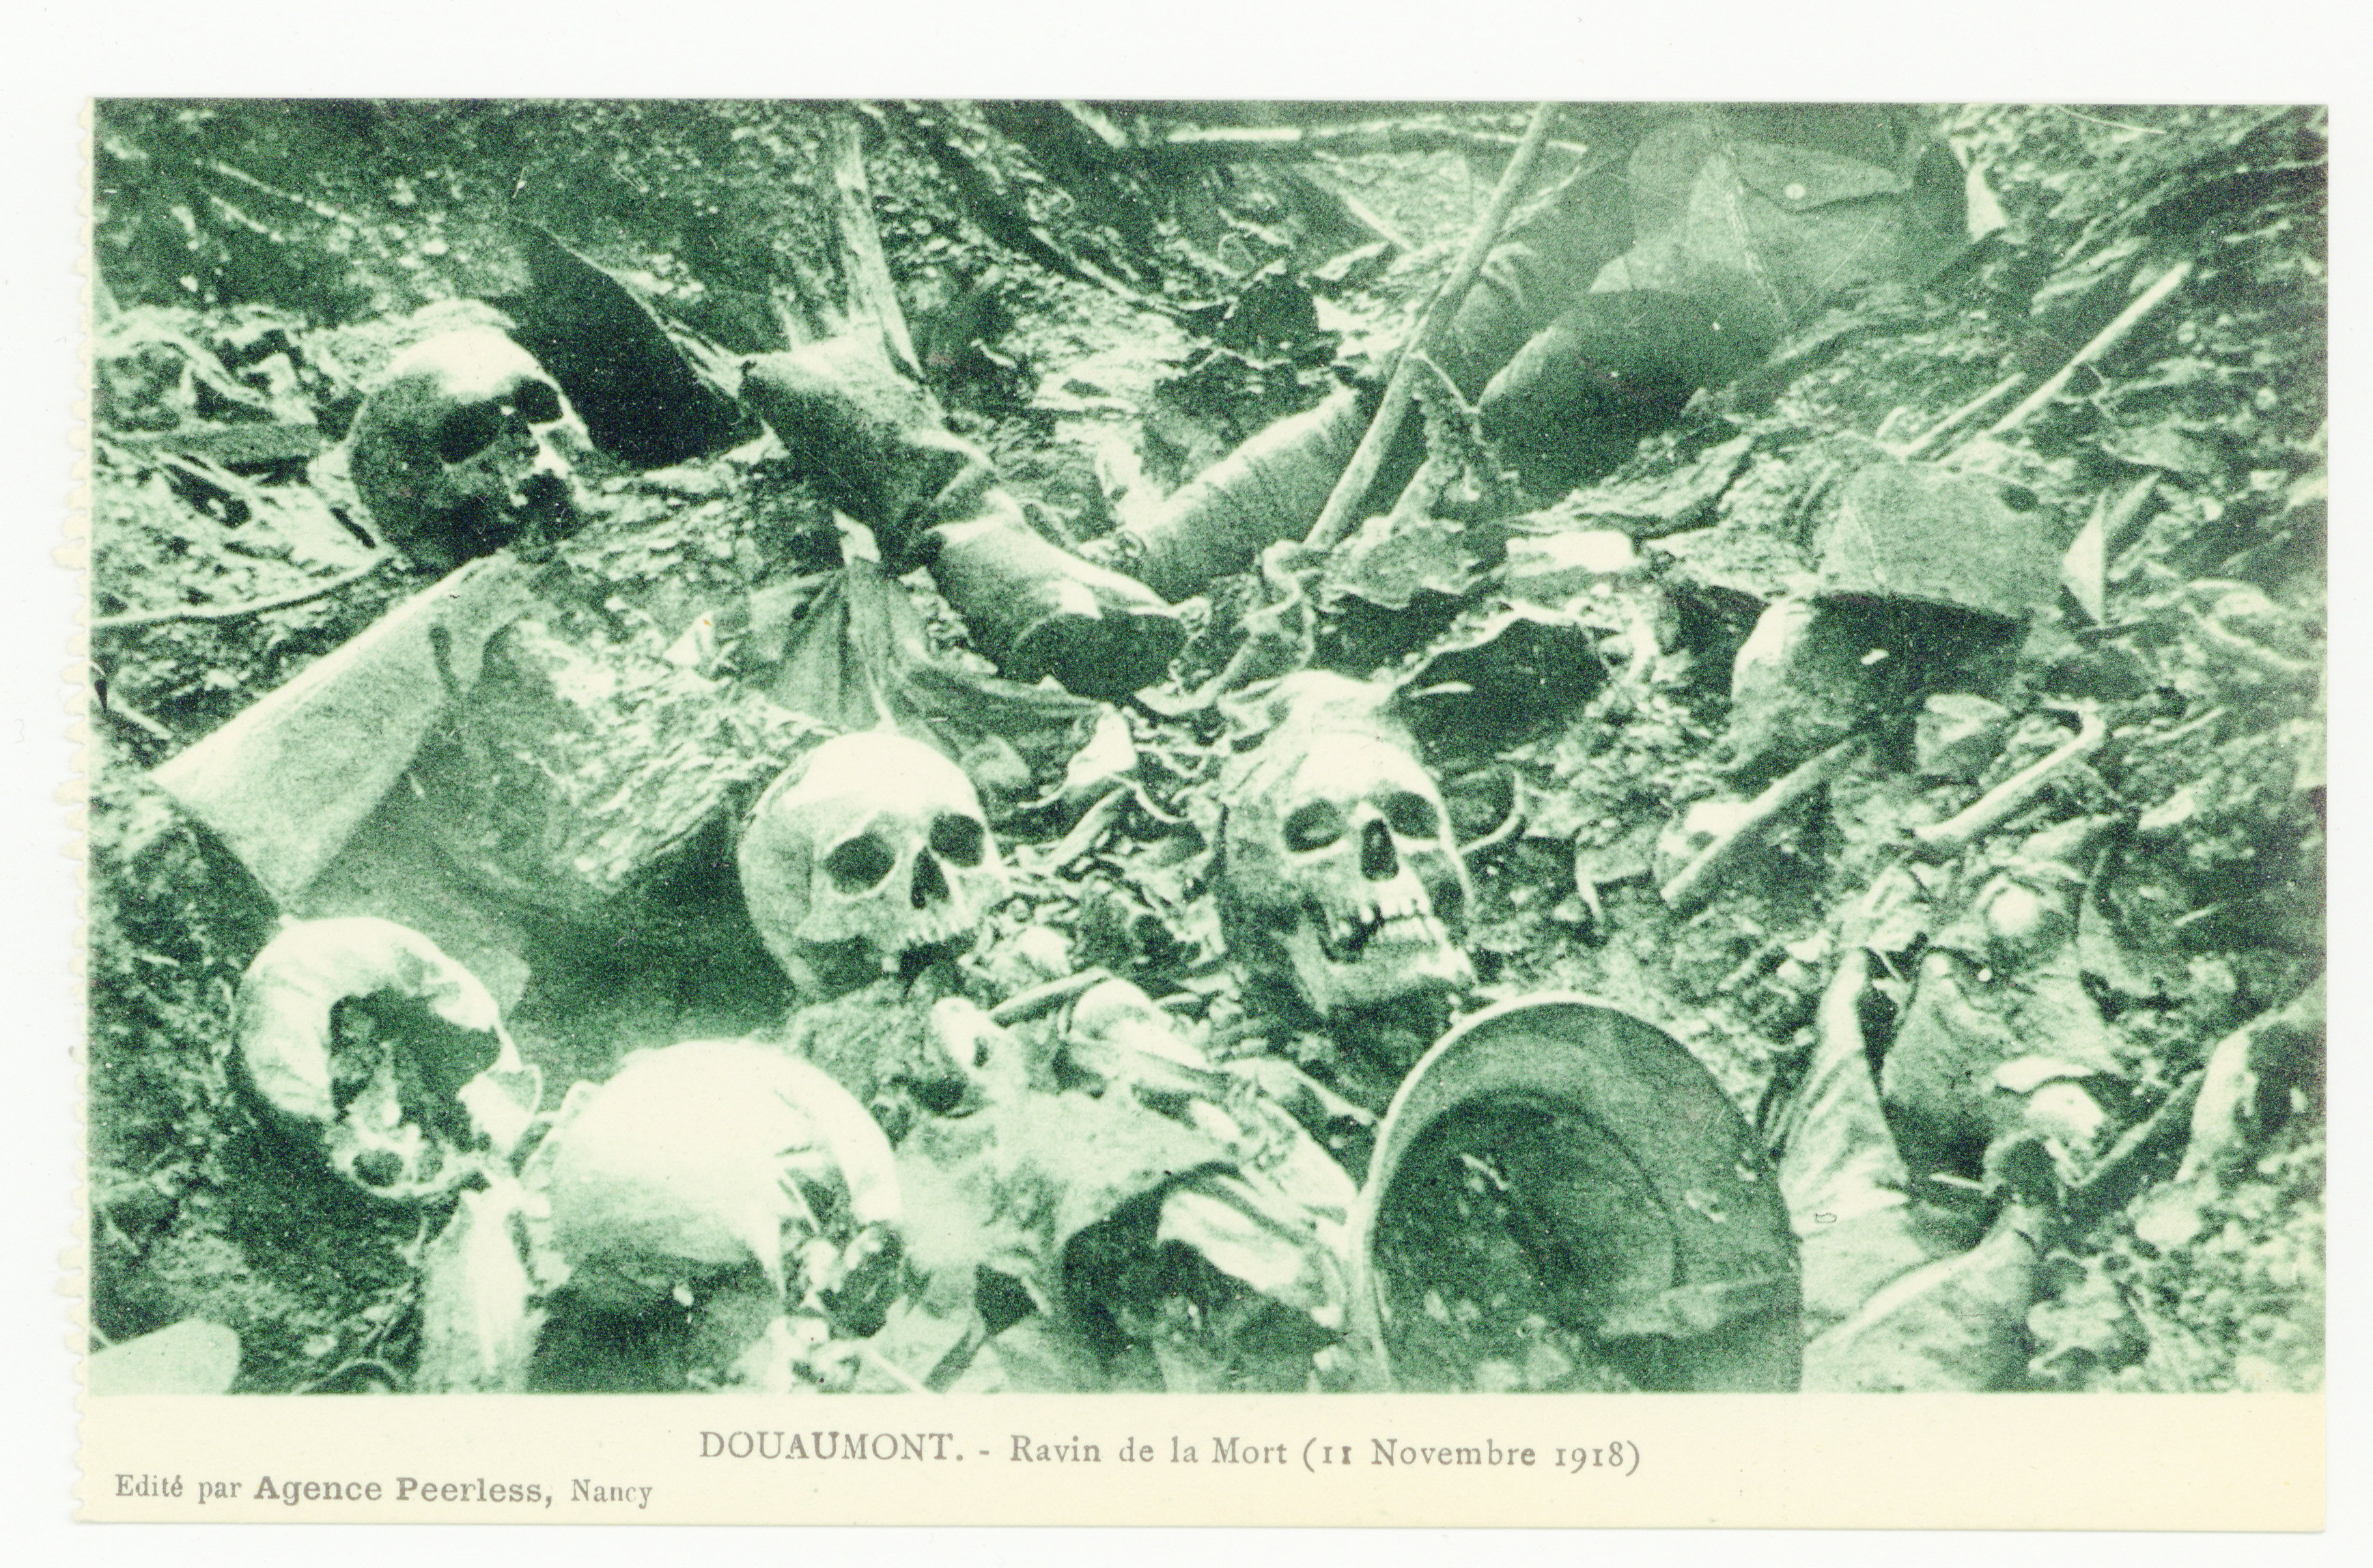 Contenu du Douaumont. Ravin de la mort (11 novembre 1918)